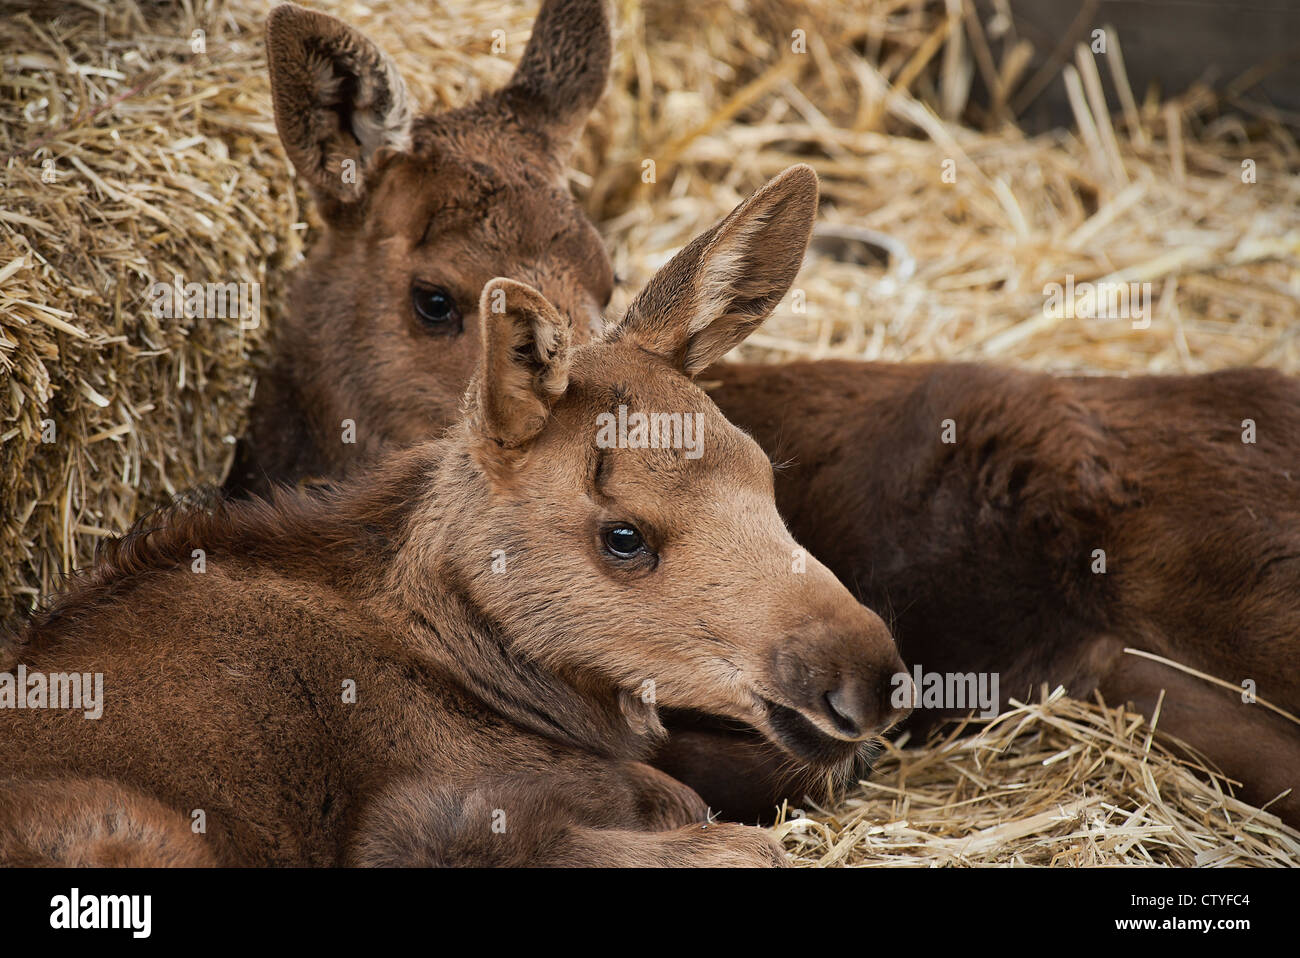 Rescued young moose calves, Alaska, USA Stock Photo